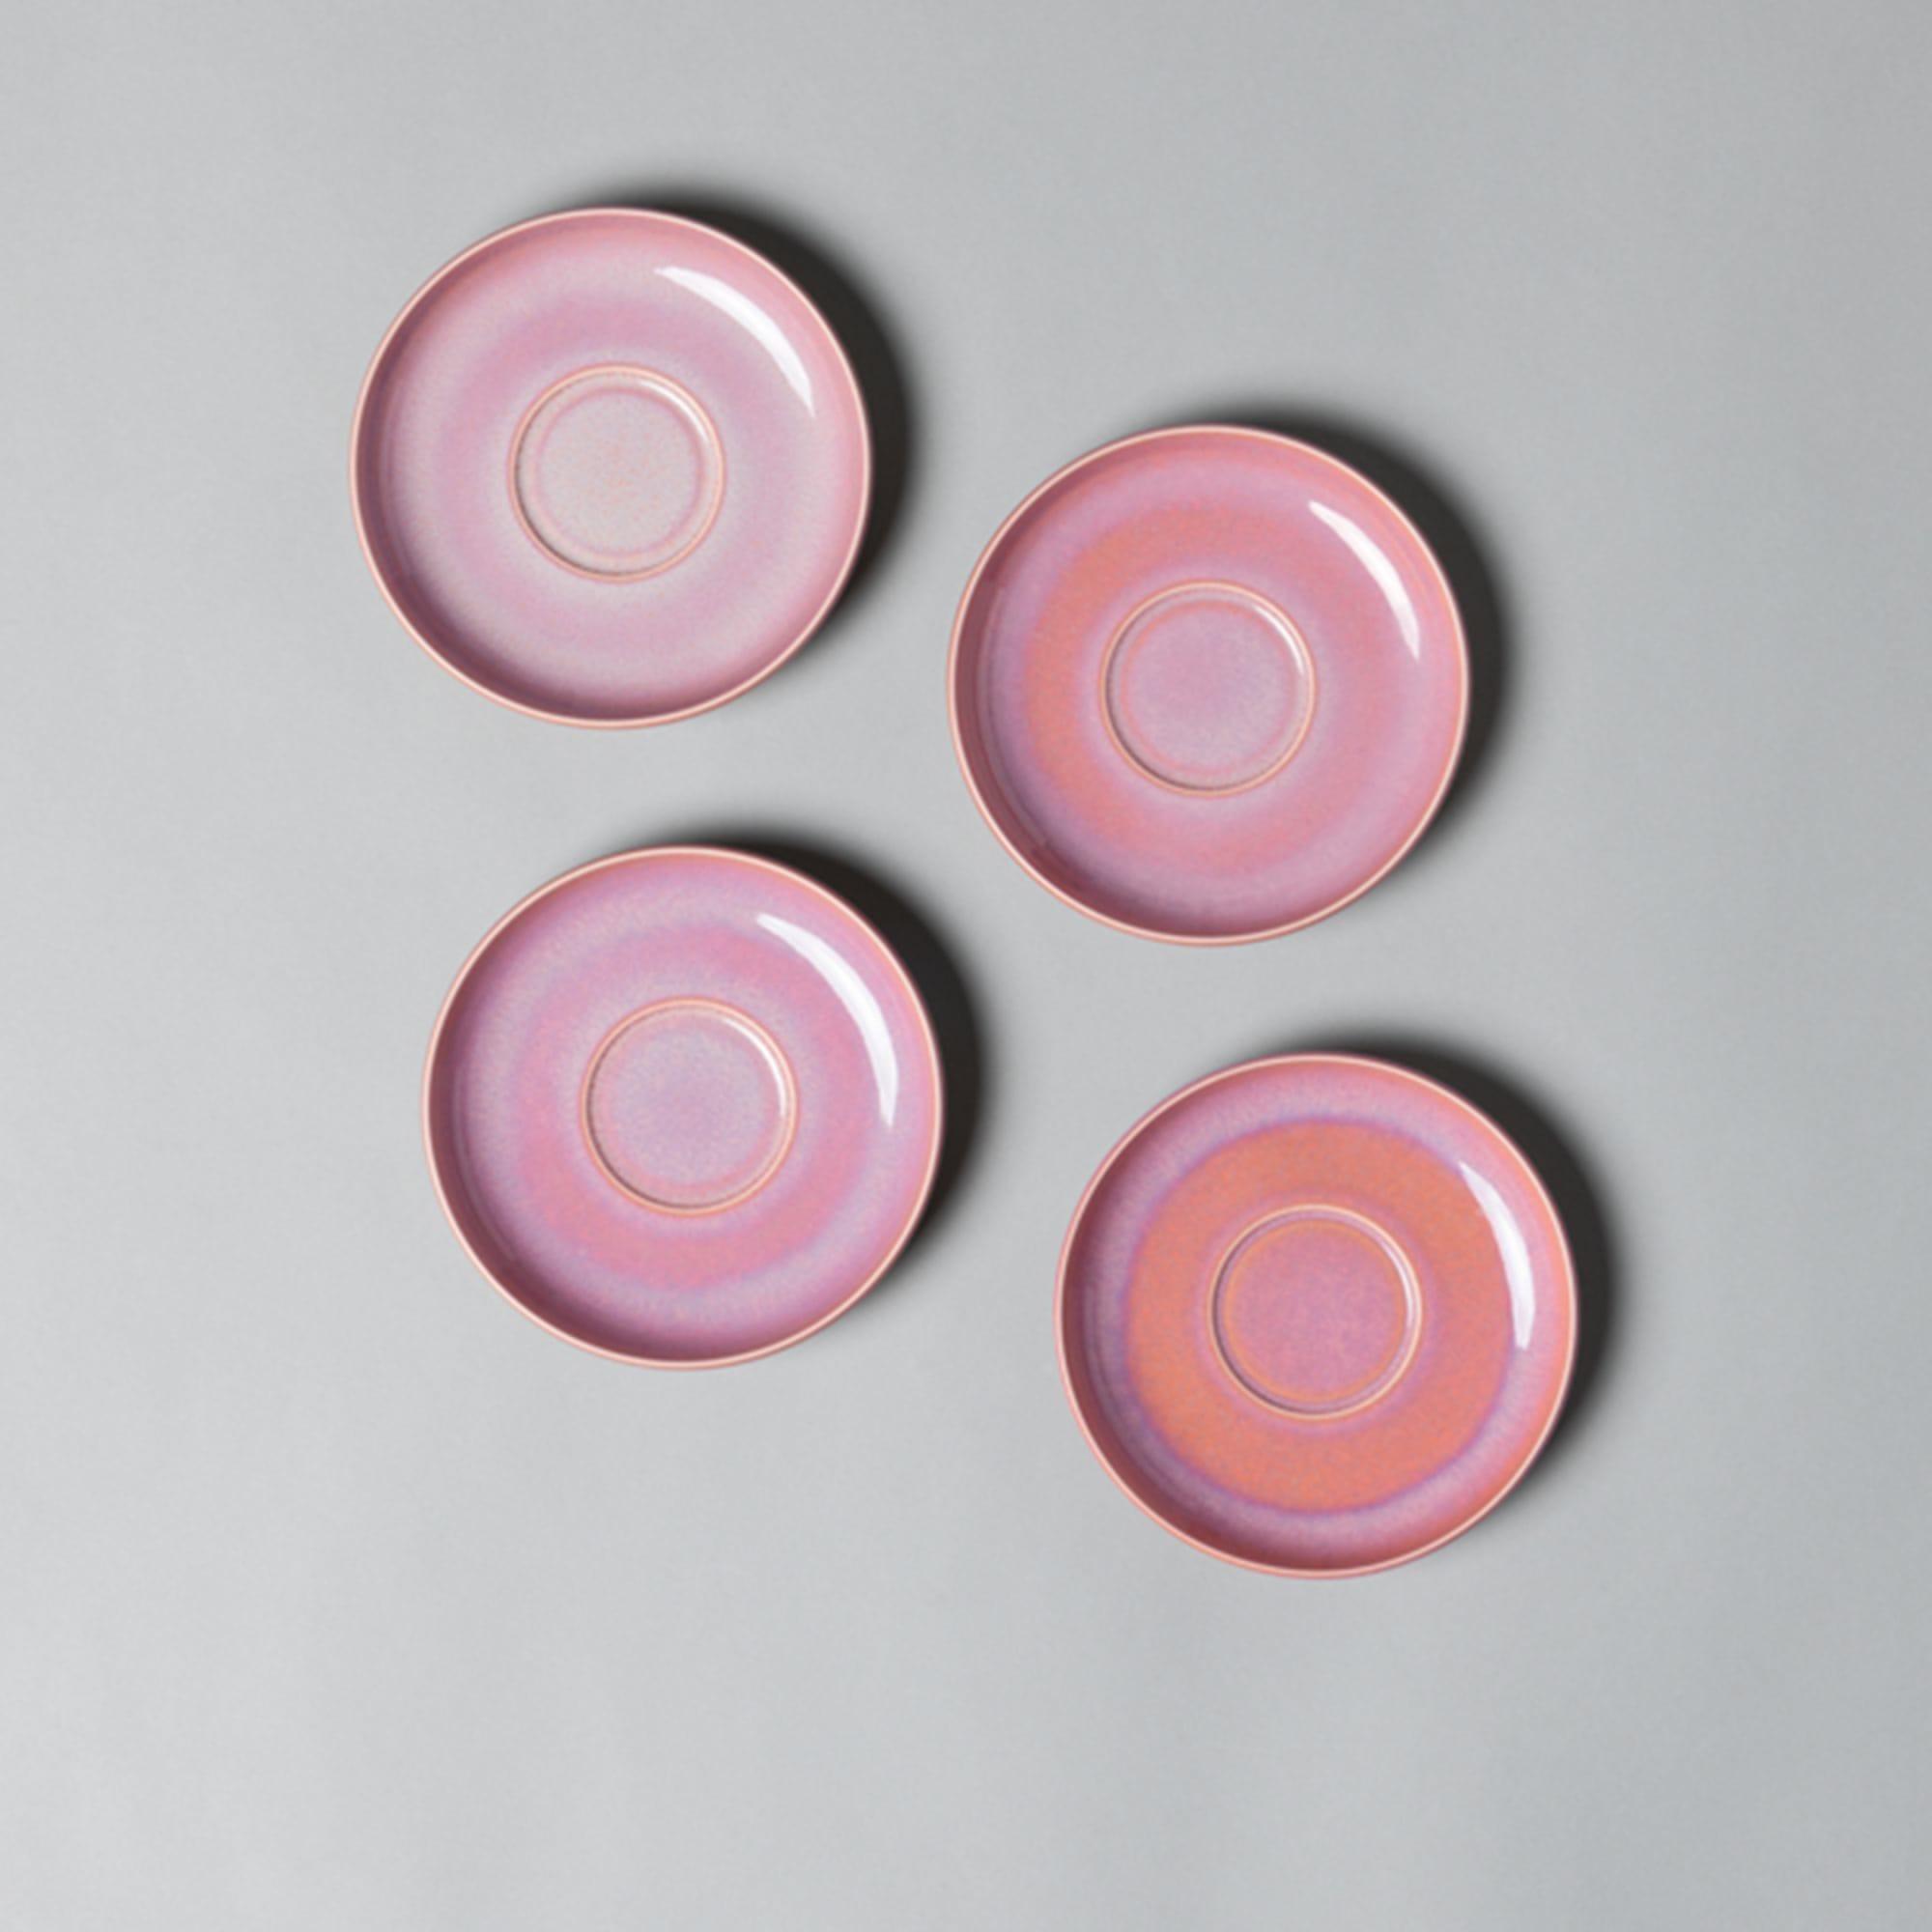 Villeroy & Boch Perlemor Coral Saucer 16cm Set of 6 Pink Image 3